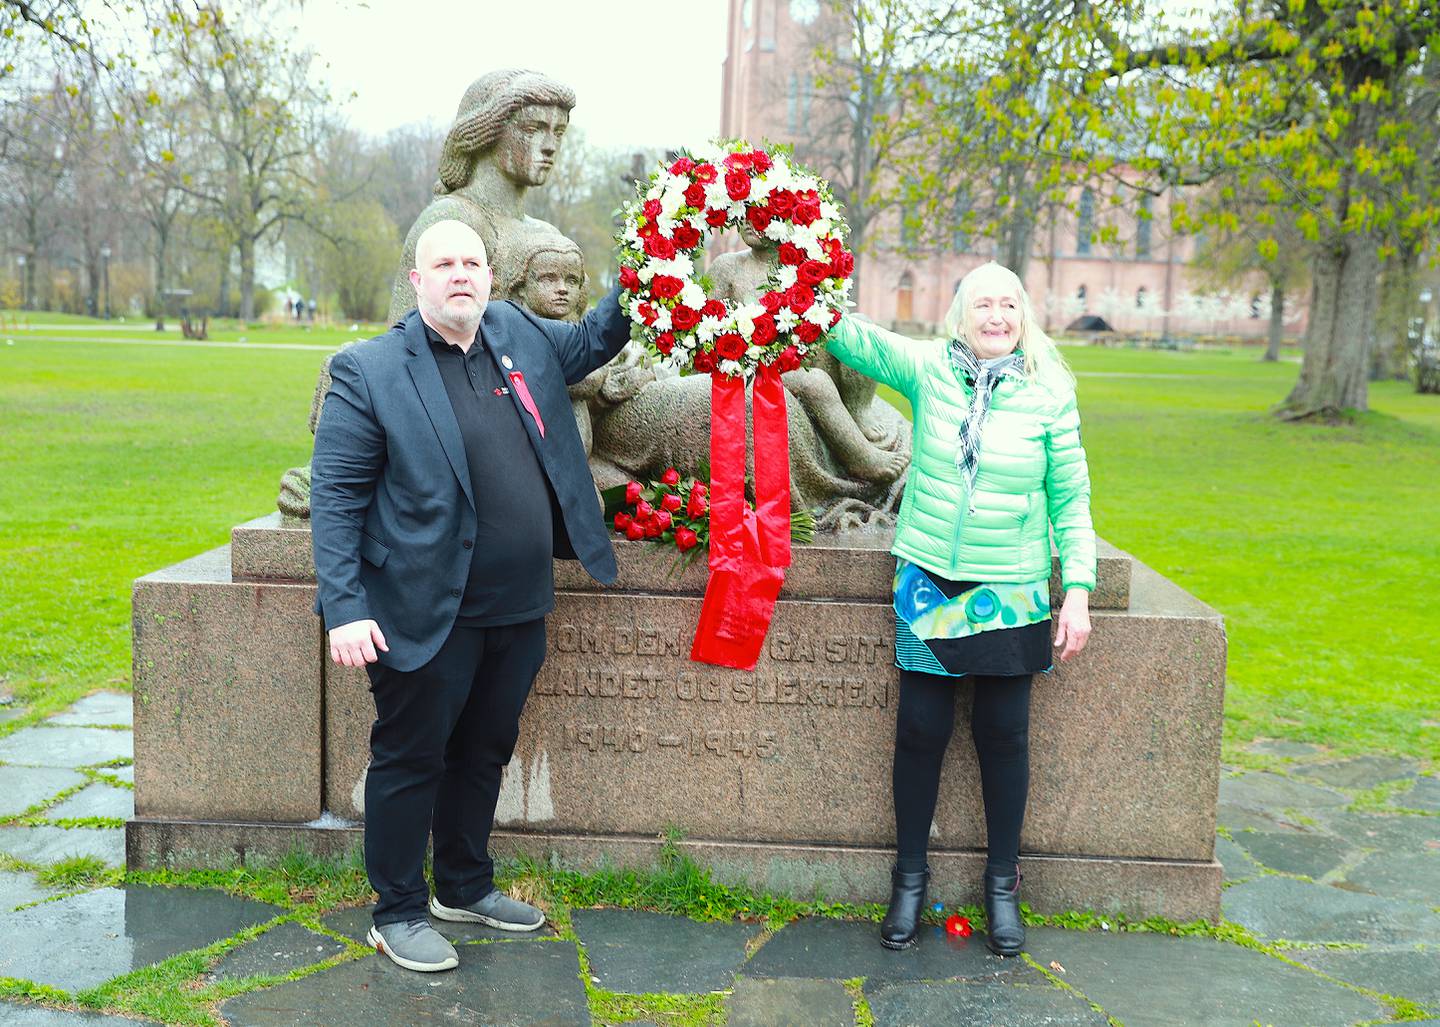 LO-leder Vidar Schei og Birgit Skjæret NKP Østfold holder en krans som skal legges ved minnesmerket.